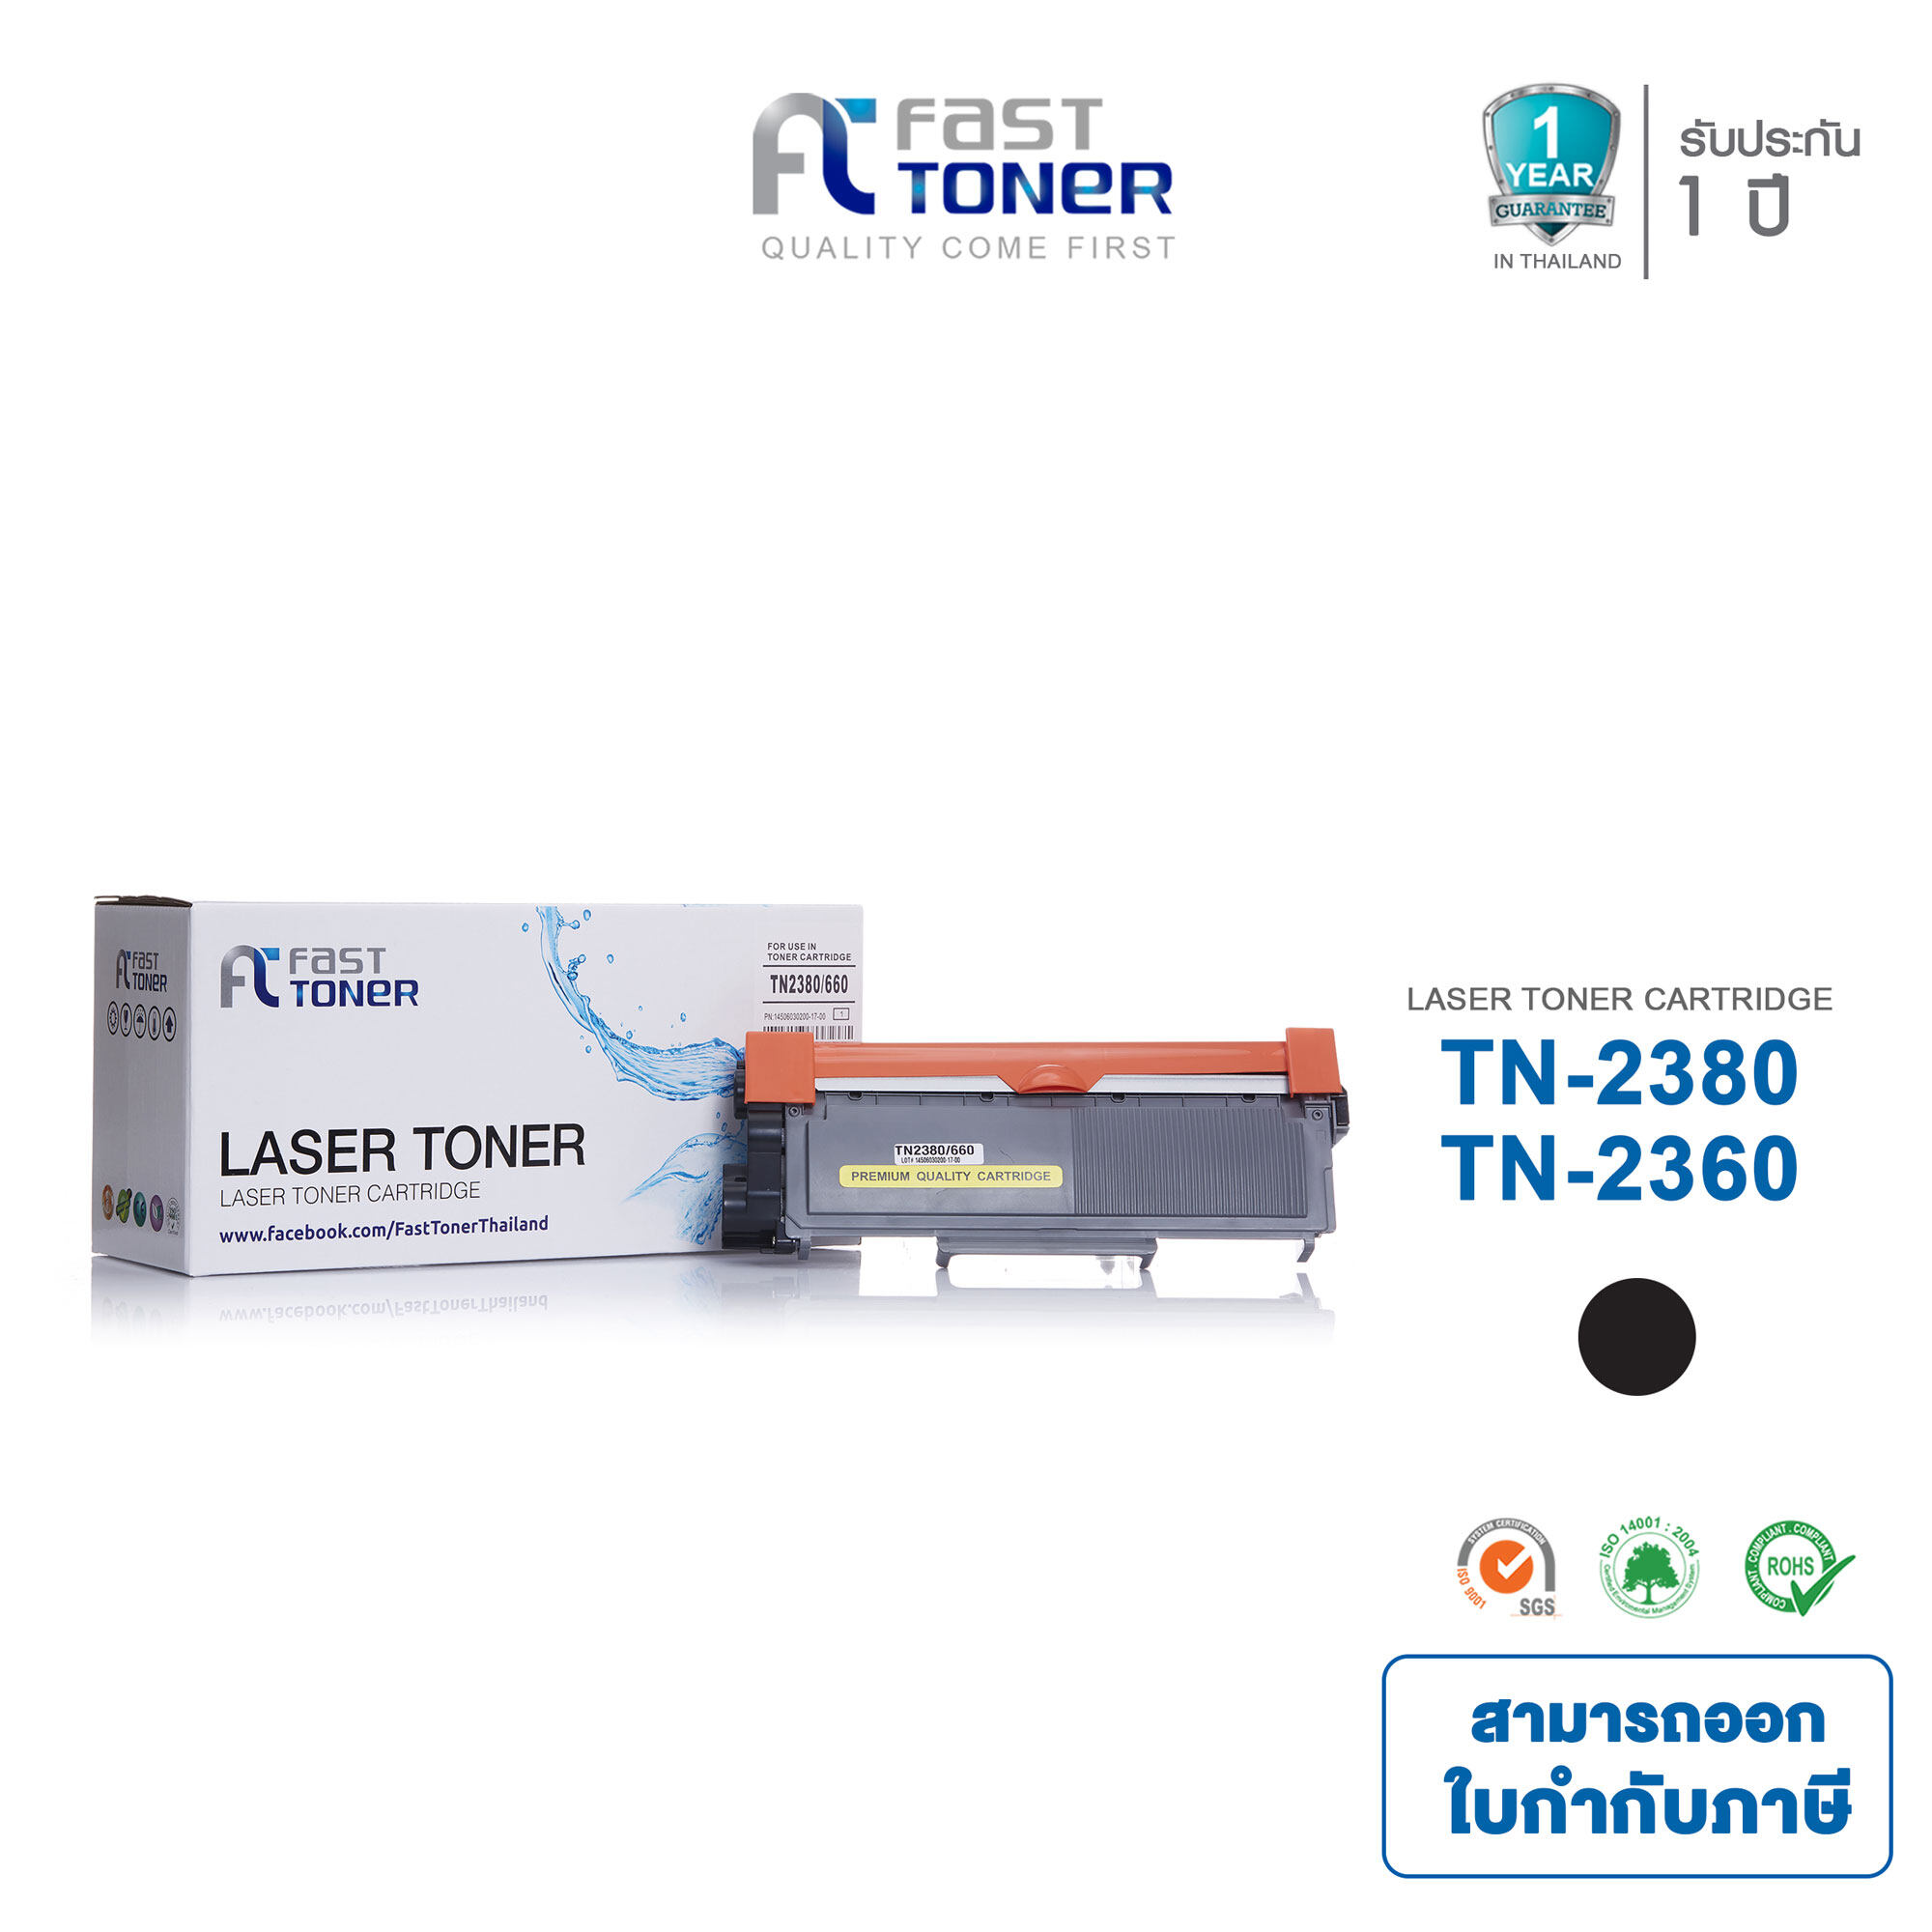 Fast Toner สำหรับรุ่น Brother TN-2380 / TN2380 / TN-2360 / TN2360 สำหรับเครื่องพิมพ์เลเซอร์ Printer BROTHER MFC-L2700D